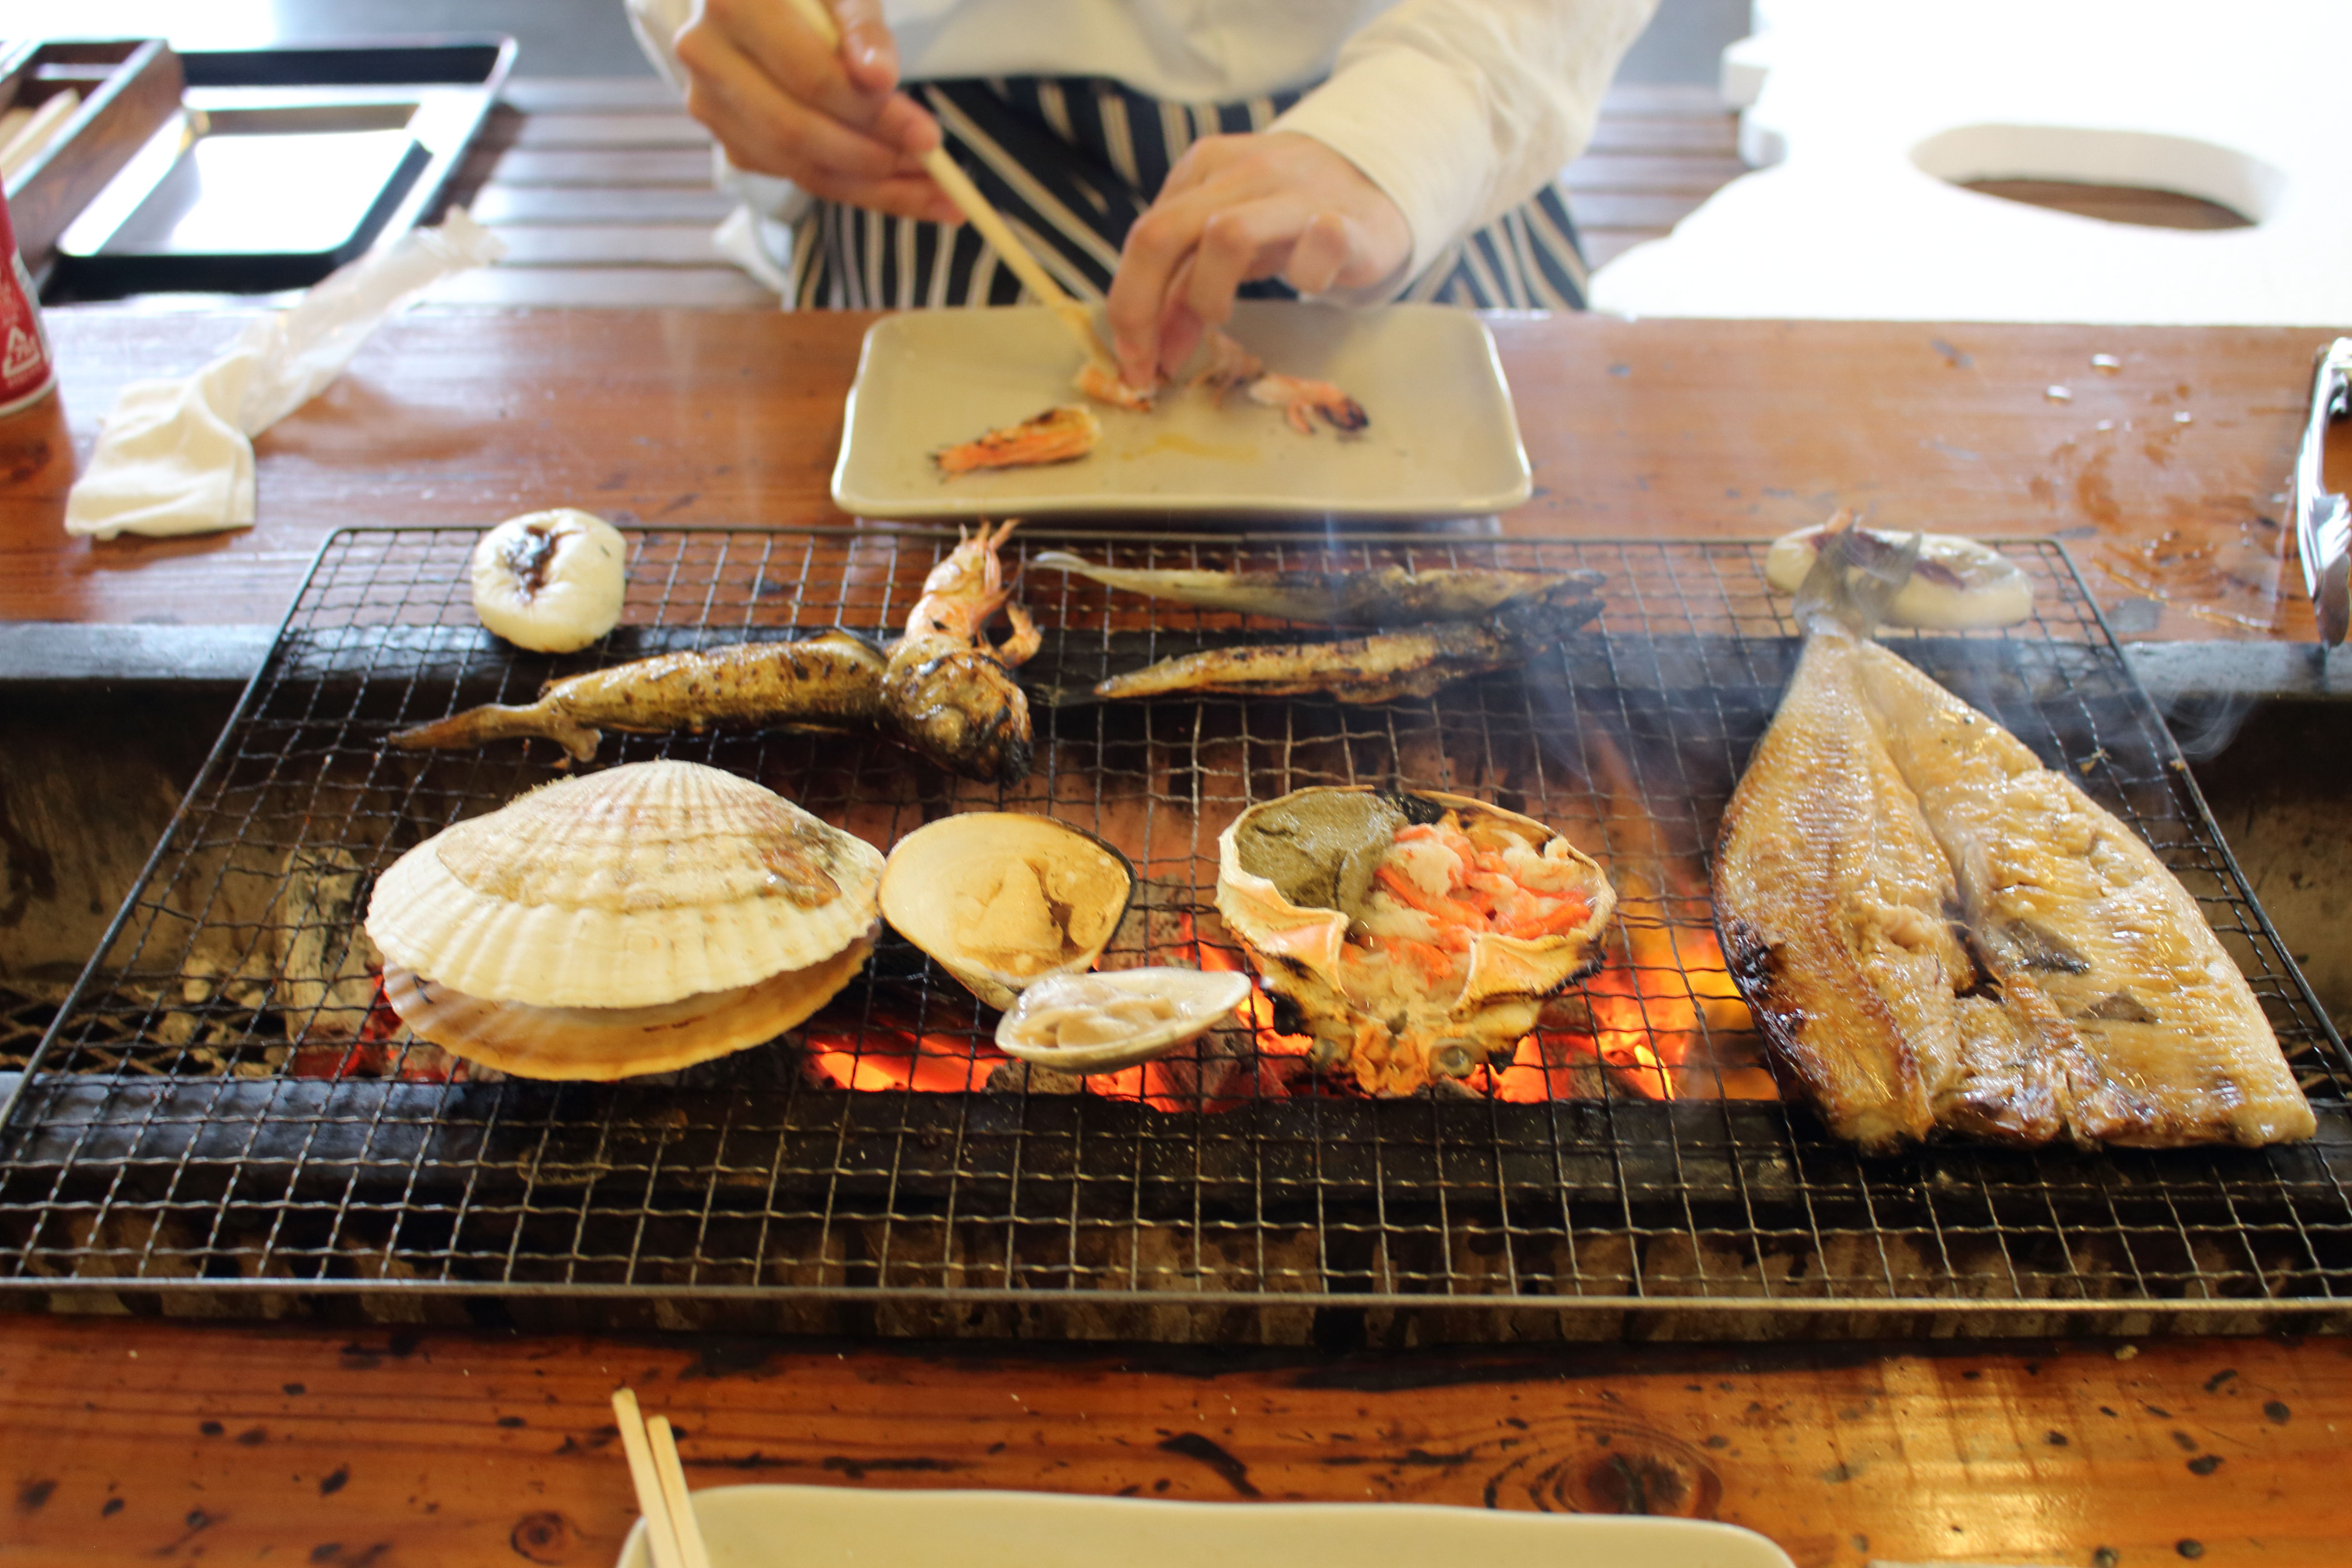 浜焼き 海の駅 蜃気楼で新鮮な魚貝類をそのまま食べてきた 富山の遊び場